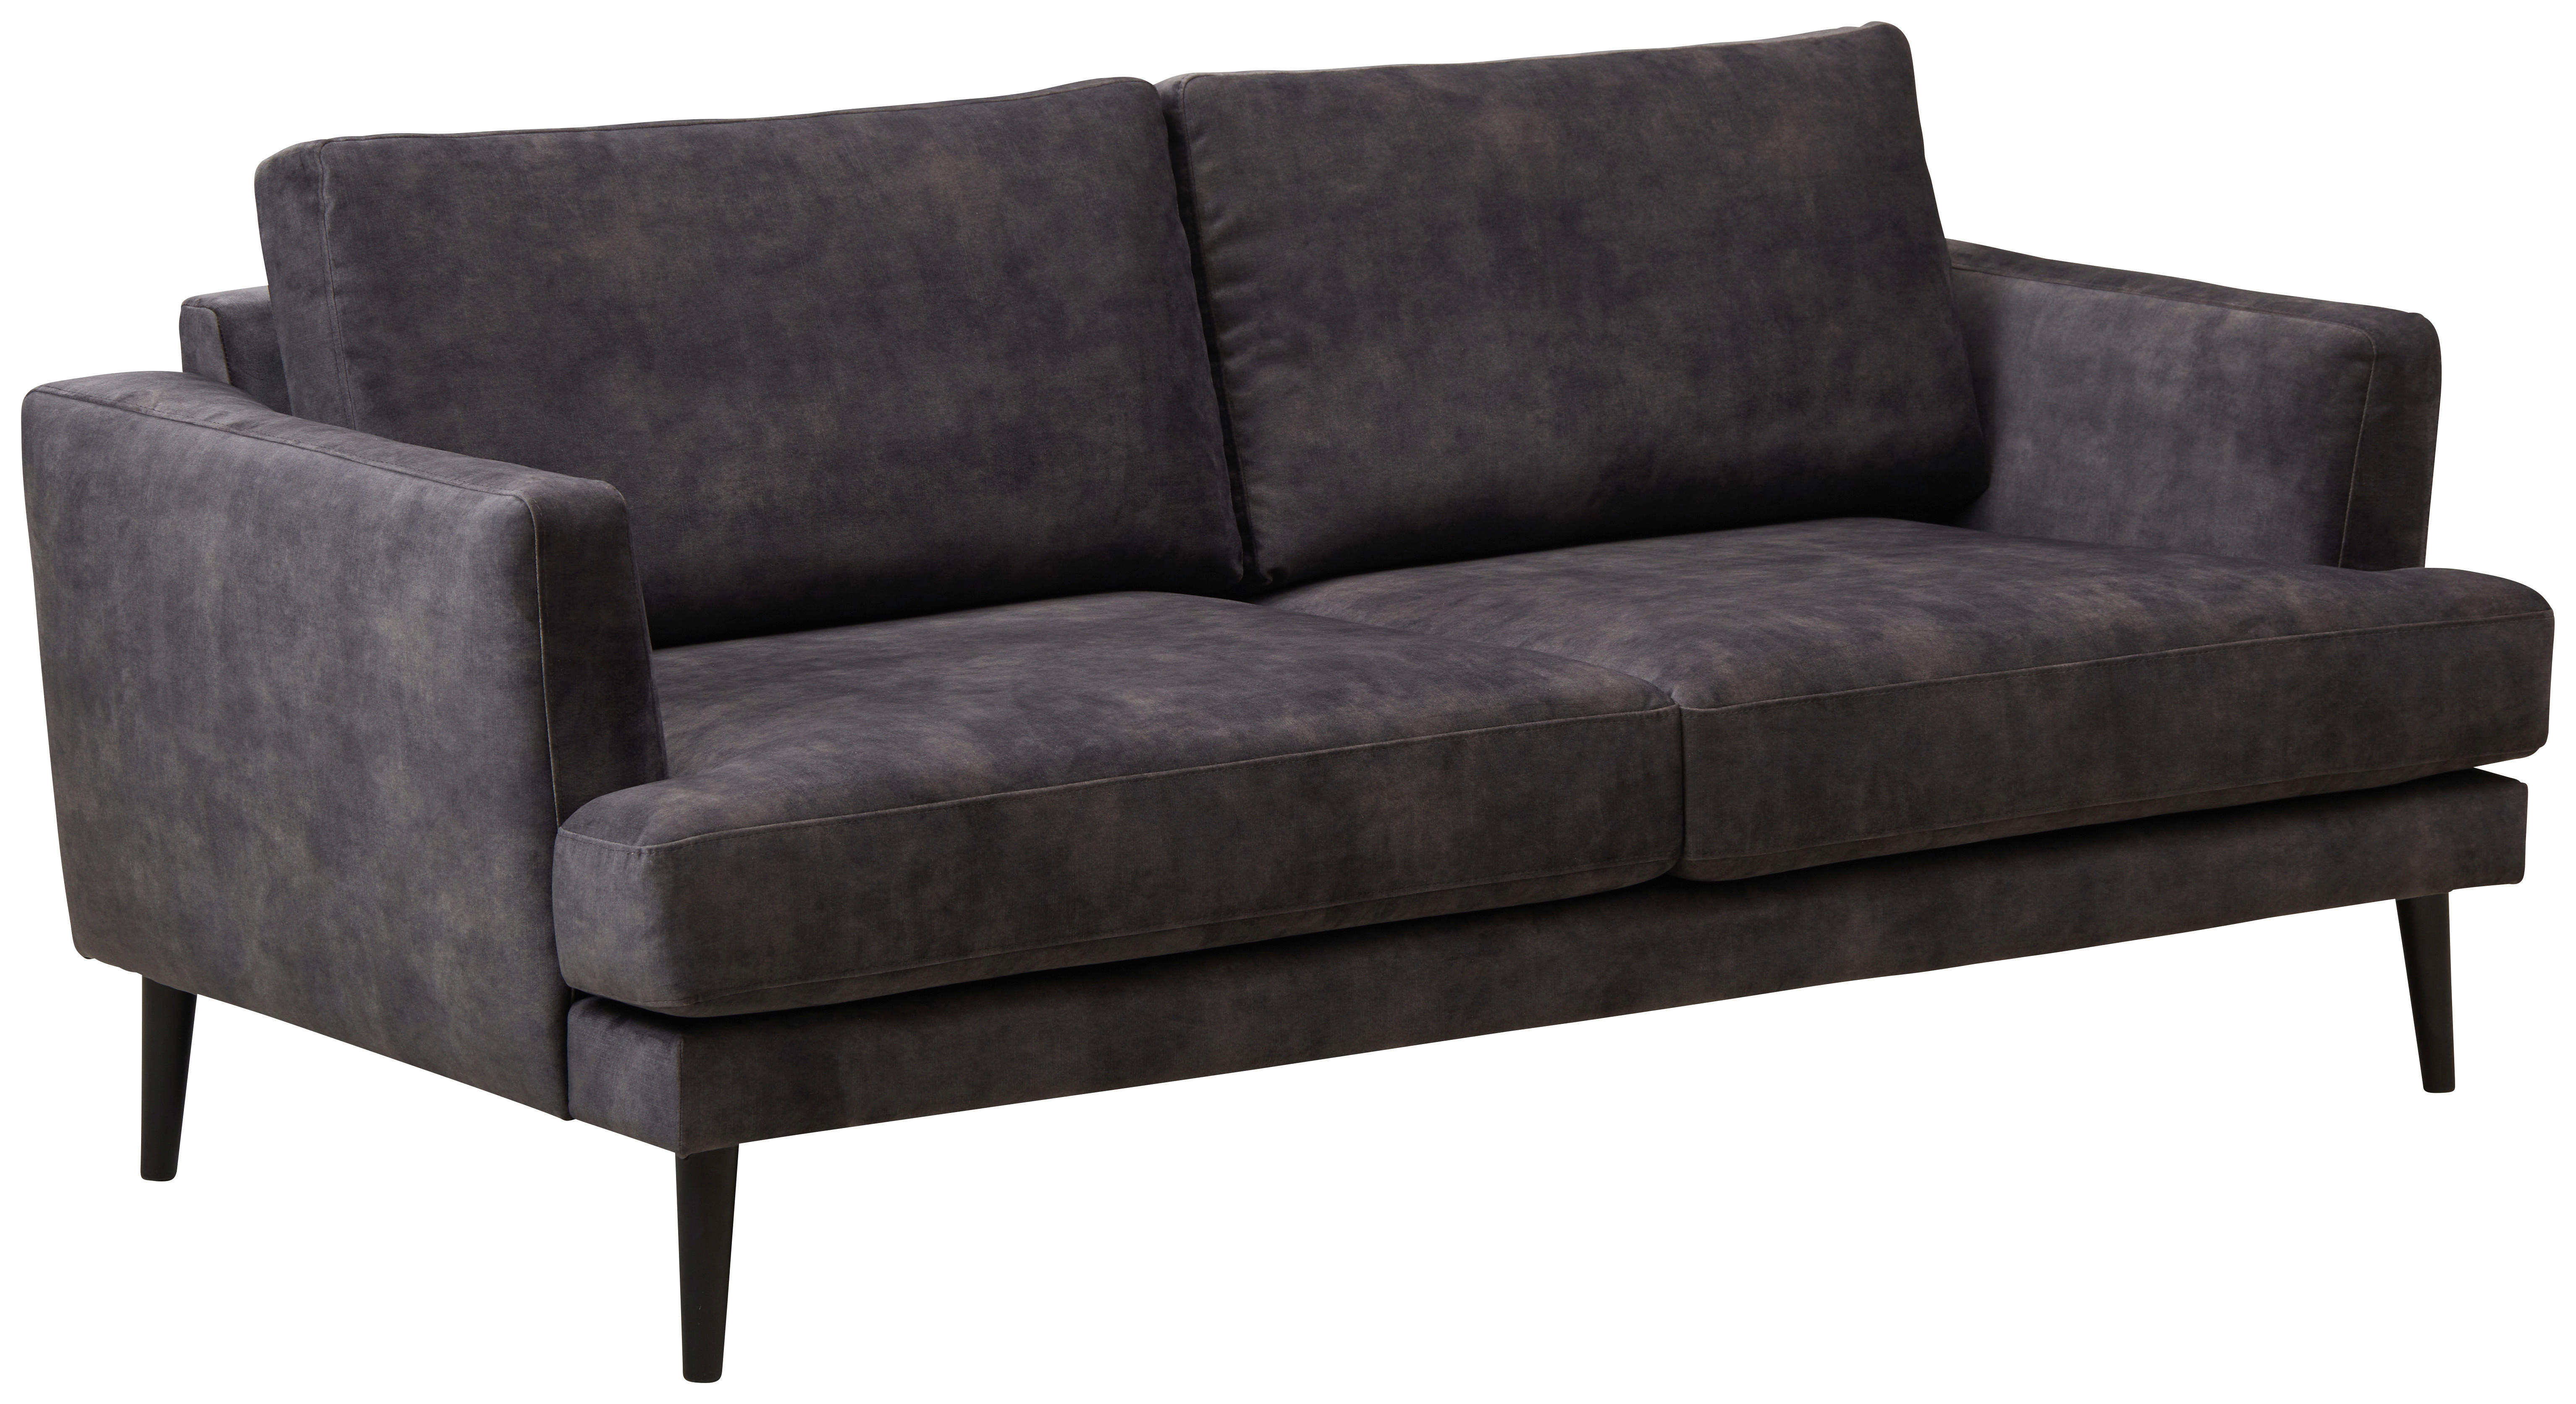 SOFFA i trä, textil mörkgrå  - mörkgrå/svart, Design, trä/textil (190/85/92cm) - Pure Home Comfort